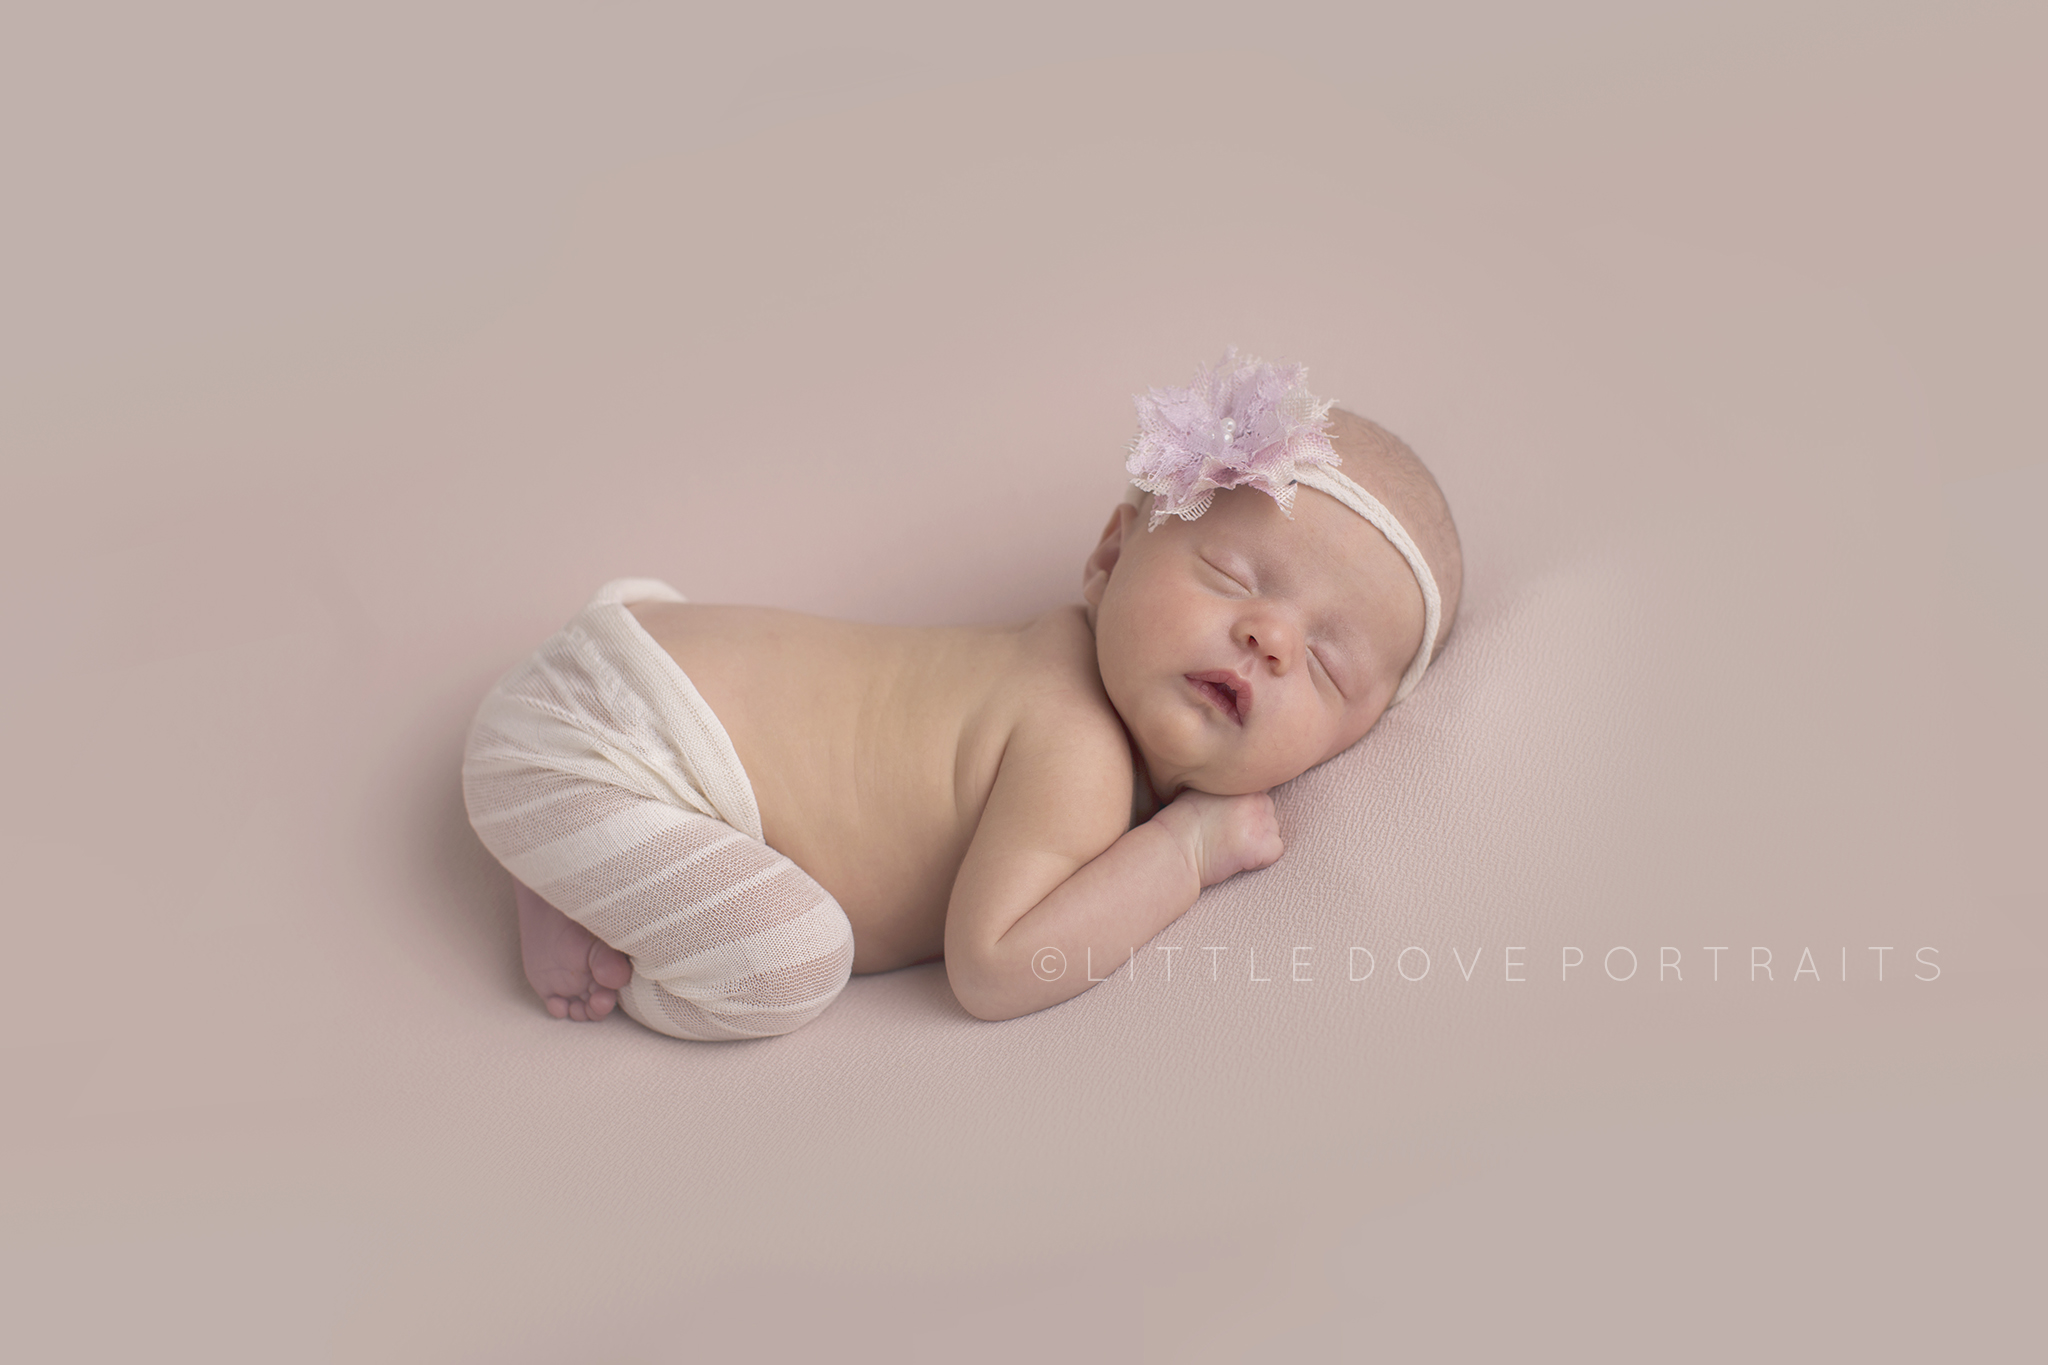 Plano TX Newborn photographer - Wylie studio - newborn girl portraits #dallasnewbornphotographer #newborngirl #planonewbornphotographer #newbornphotographer #maternityphotographer #famiyportraits #pink